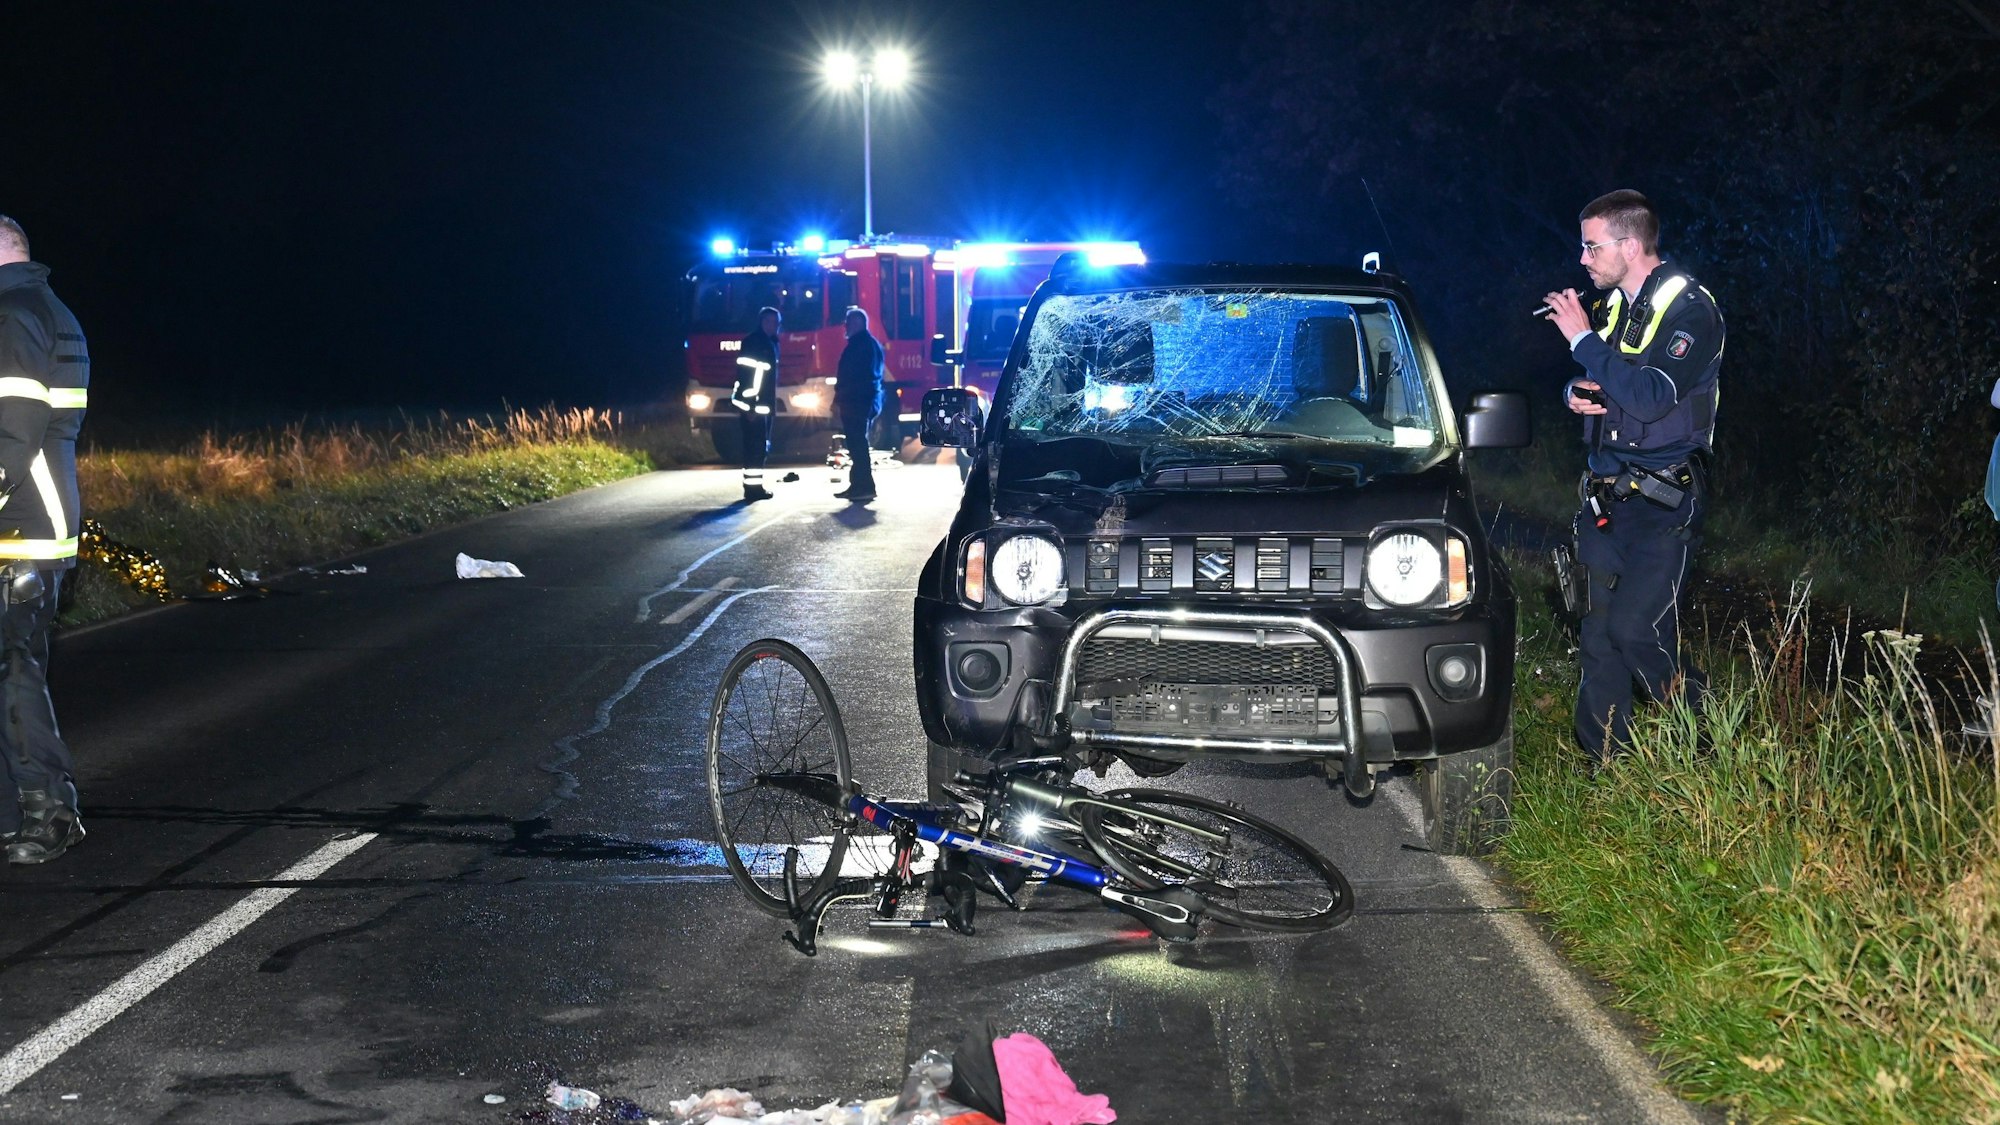 Auf der K 50 zwischen Hürth Berrenrath und Türnich hat ein Auto drei Fahrradfahrer angefahren. Ein Polizist ist bei der Unfallaufnahme zu sehen.